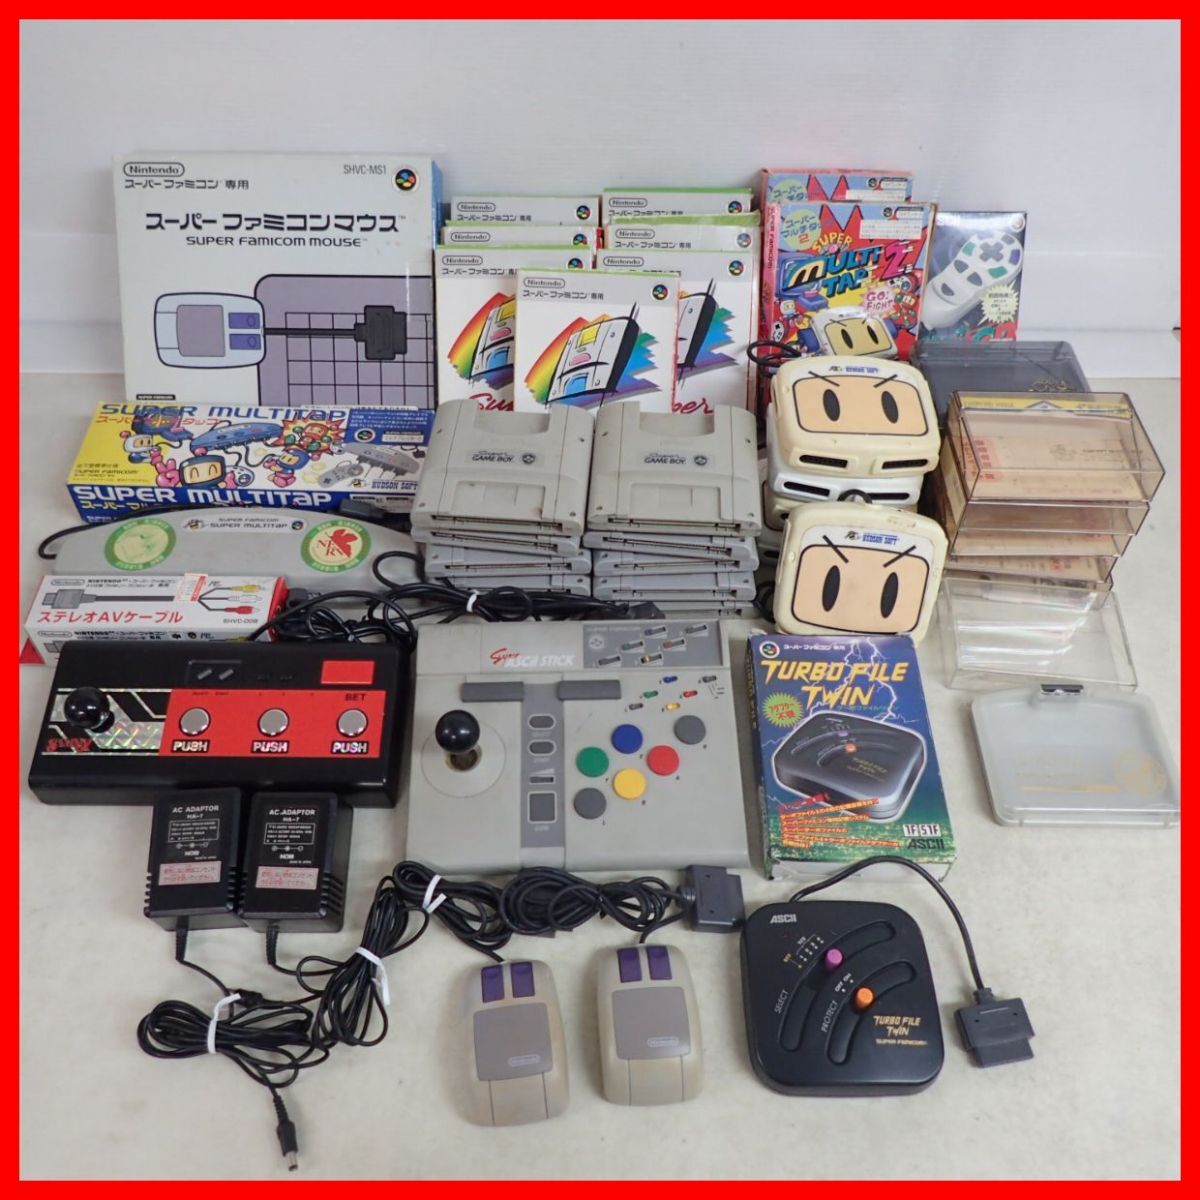 SFC Hsu fami периферийные устройства ASCII палочка / Super Famicom мышь / мульти- ответвление / super Game Boy и т.п. совместно много комплект [40